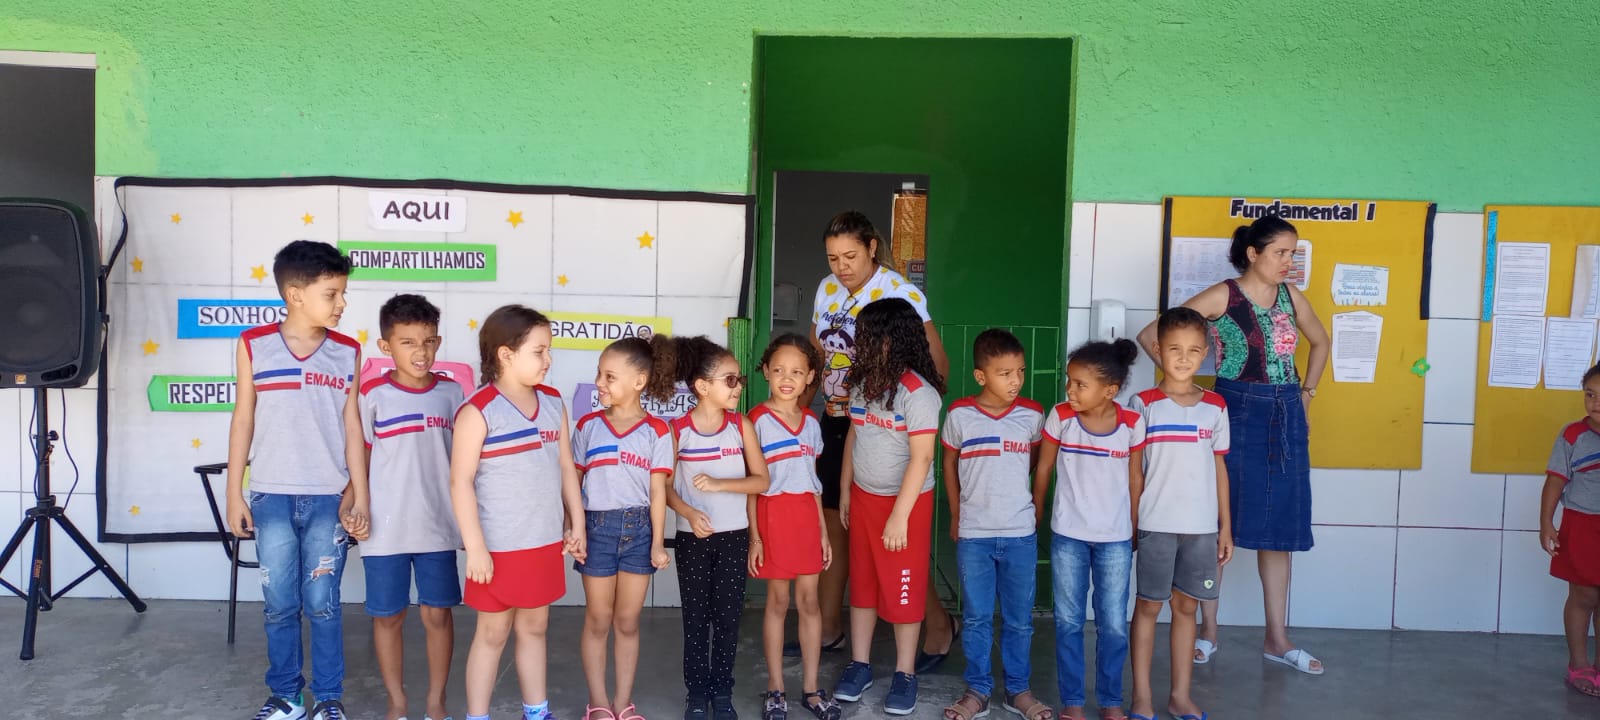 Prefeitura de Eunápolis reforça compromisso com a cultura da paz na rede municipal de ensino 53